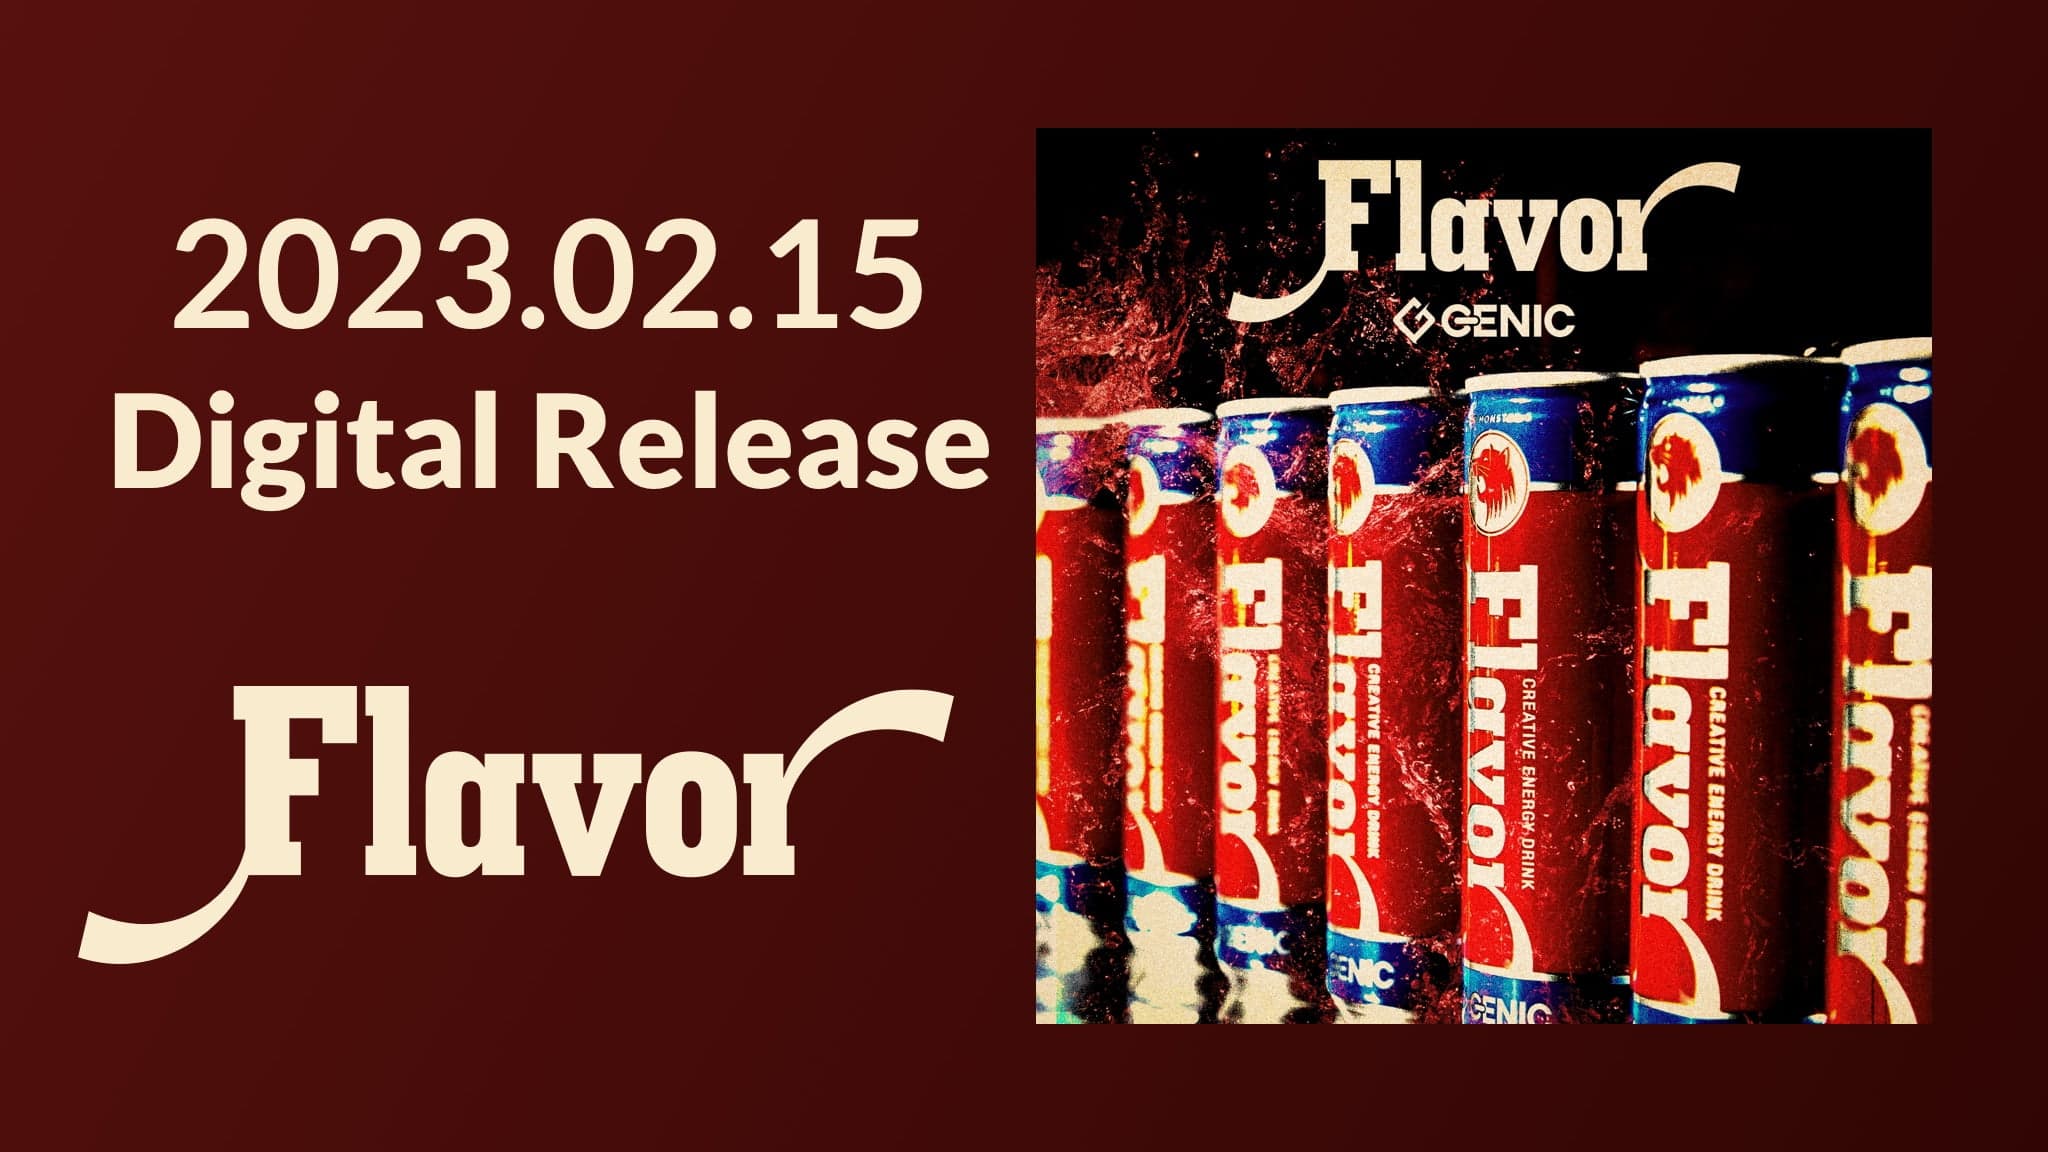 2023.02.15 Digital Release「Flavor」